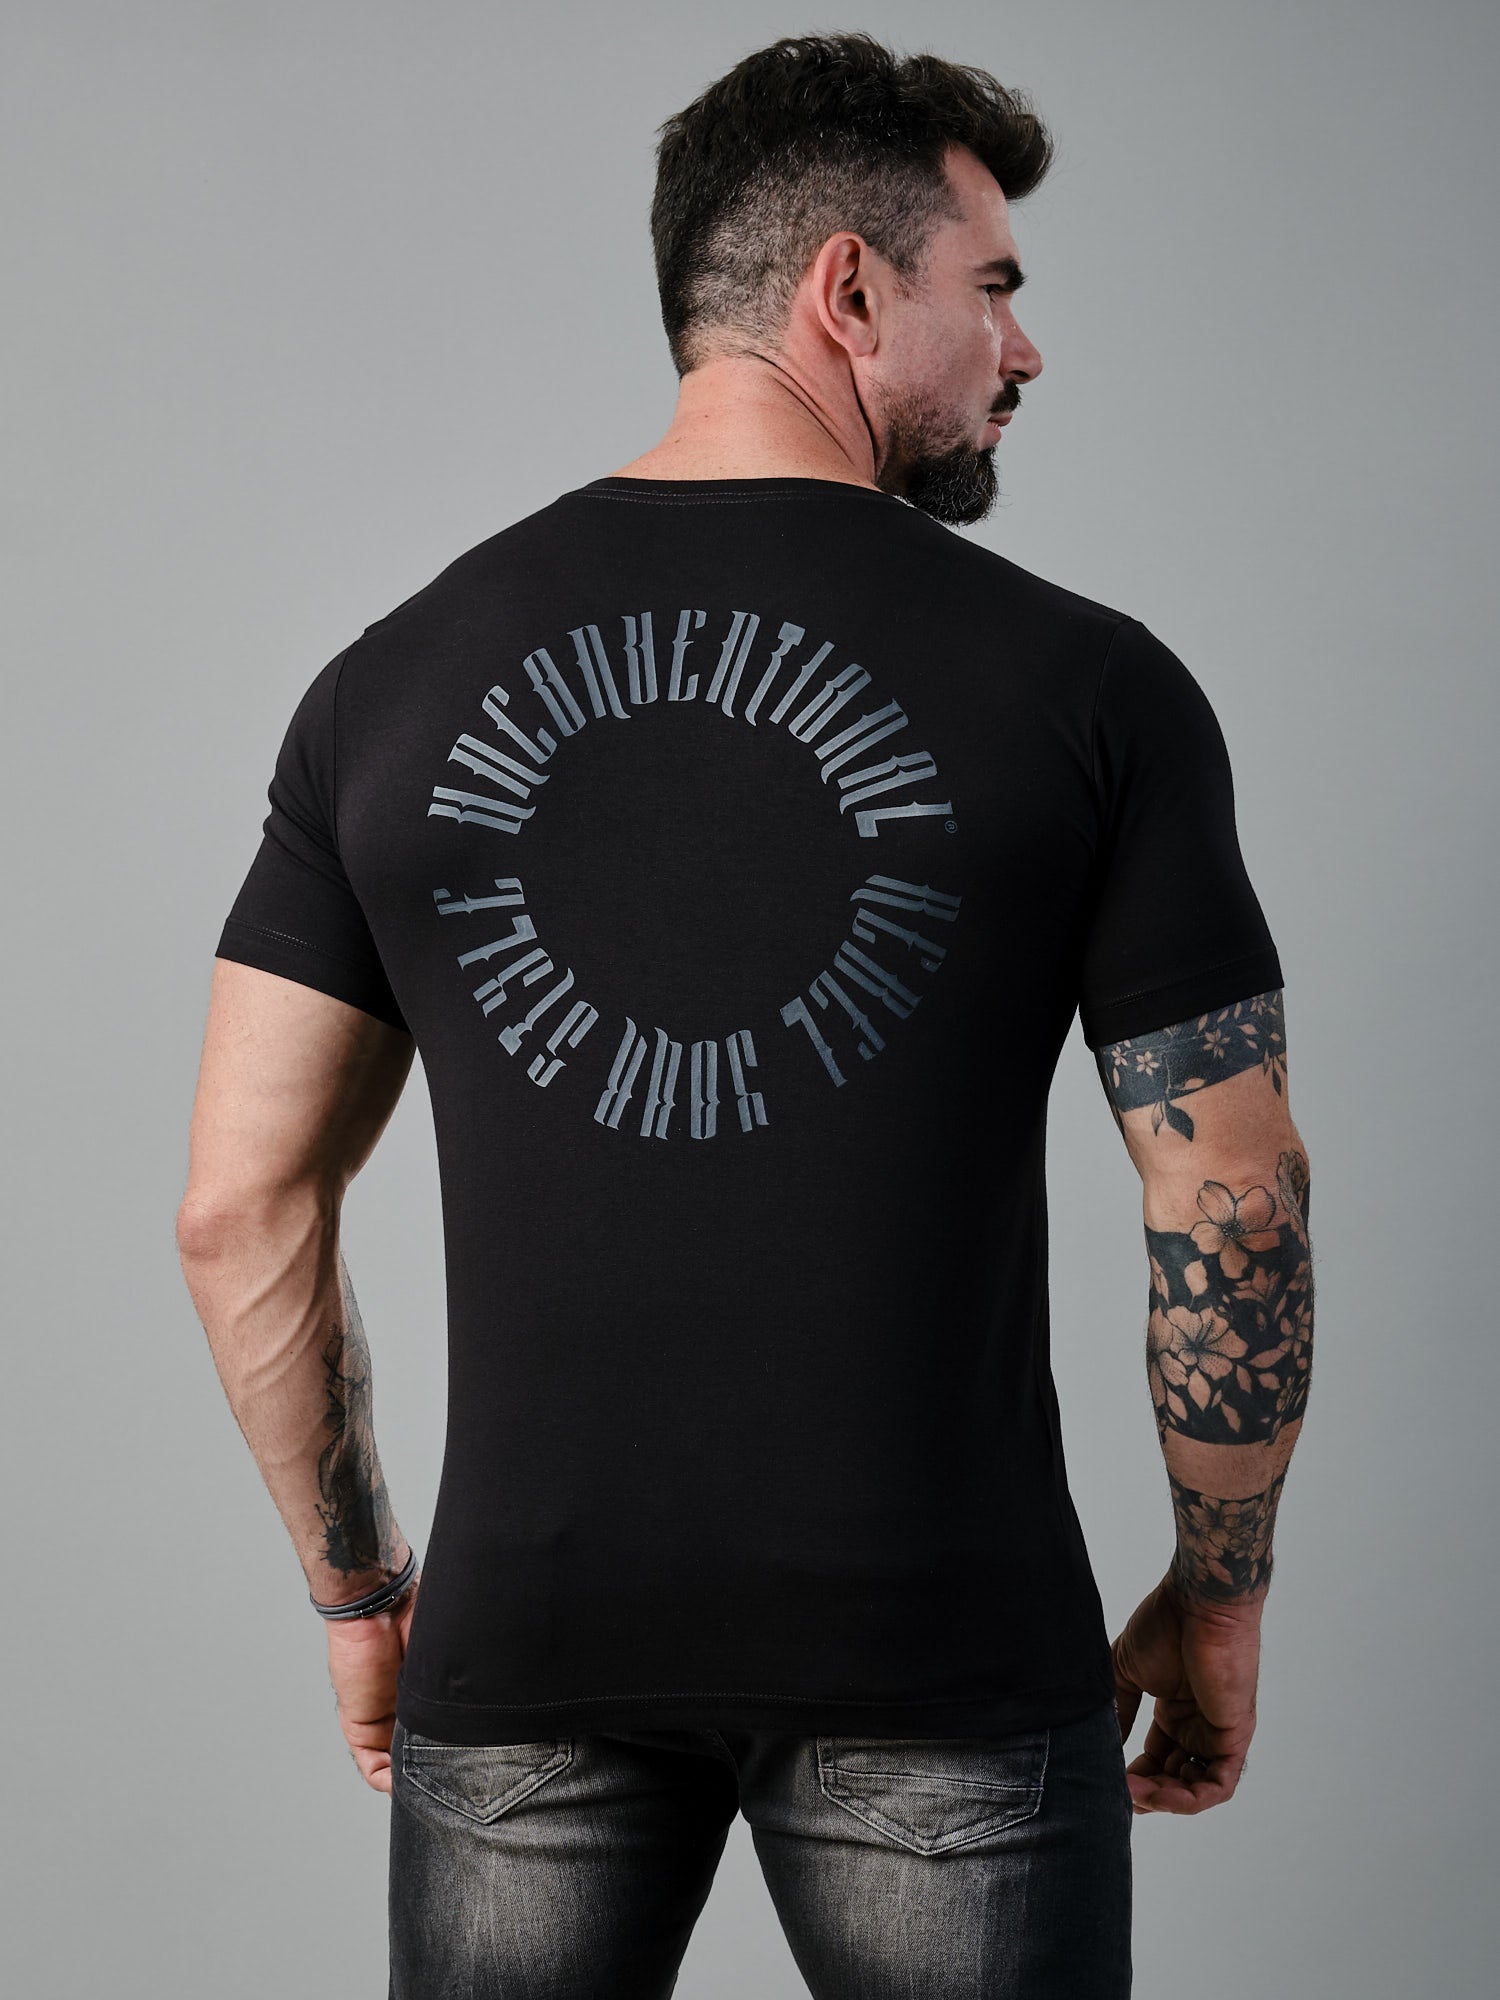 Camiseta UNCONVENTIONAL® New Circle em Algodão Egípcio Preto